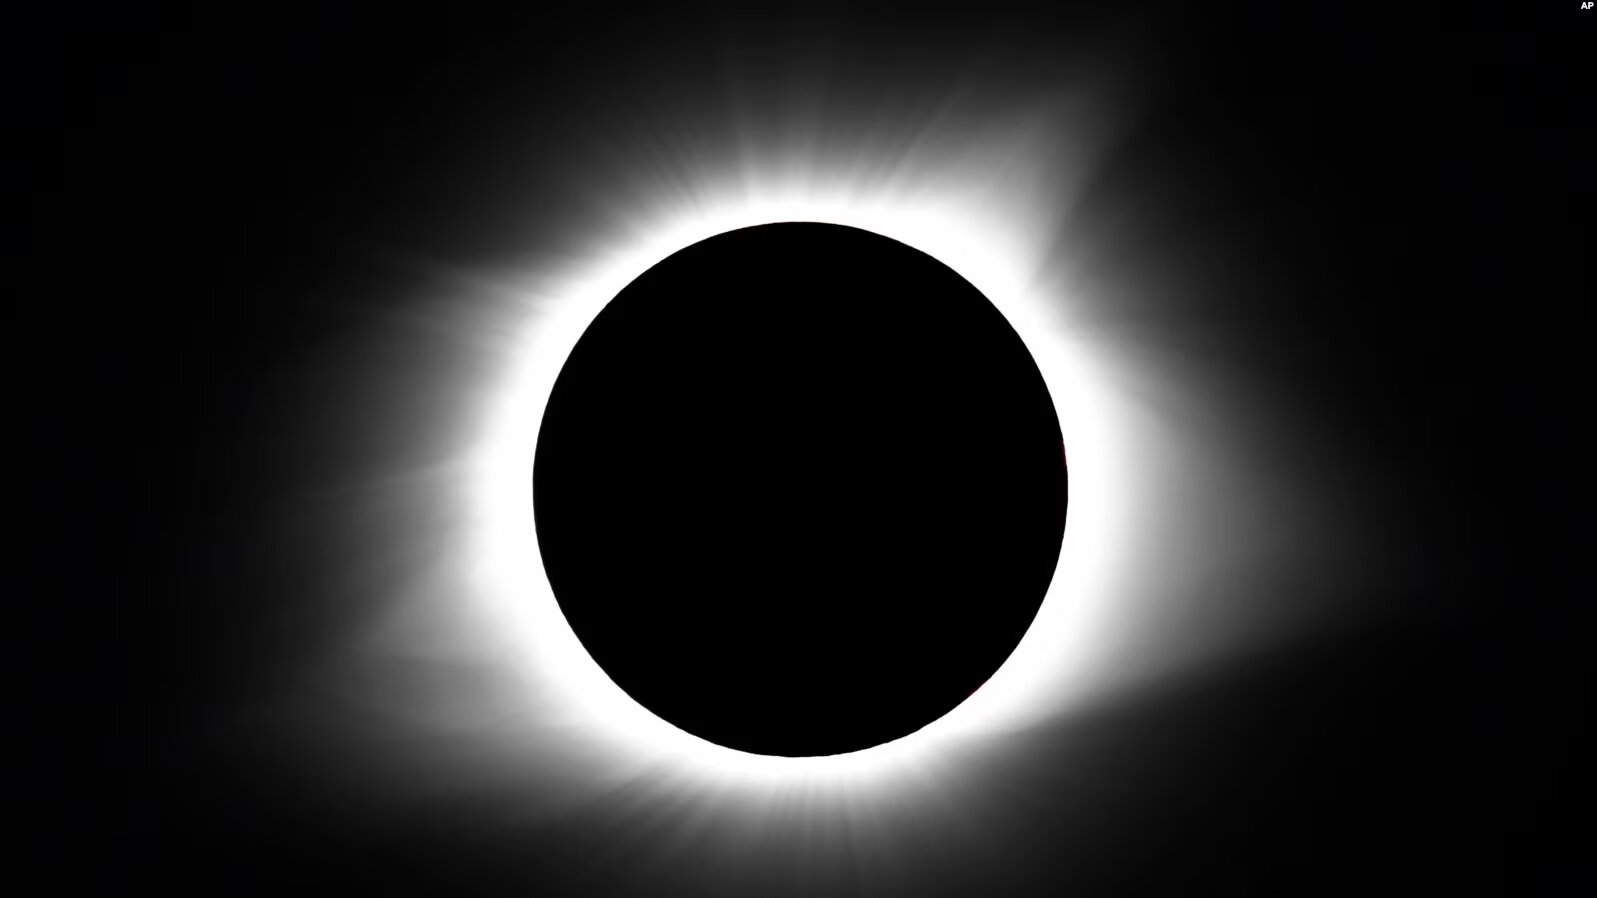 Un eclipse solar total ocurrirá el 8 de abril en más de 15 estados de Estados Unidos, cruzando el país desde Texas a Maine.